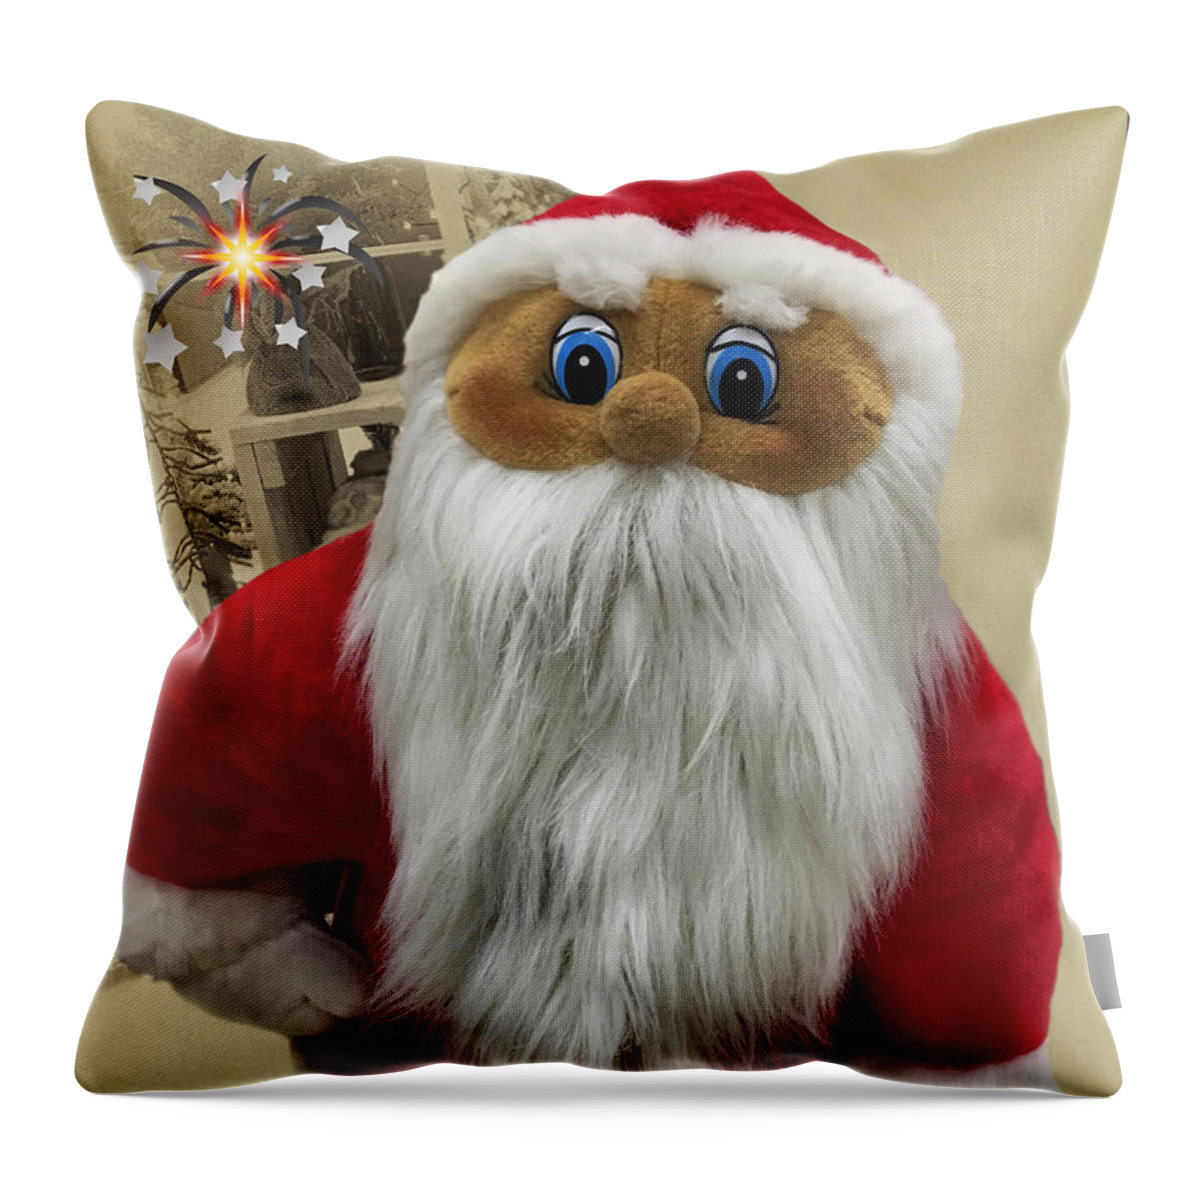 Xmas Throw Pillow featuring the photograph X-Mas Santa Claus by Eva-Maria Di Bella